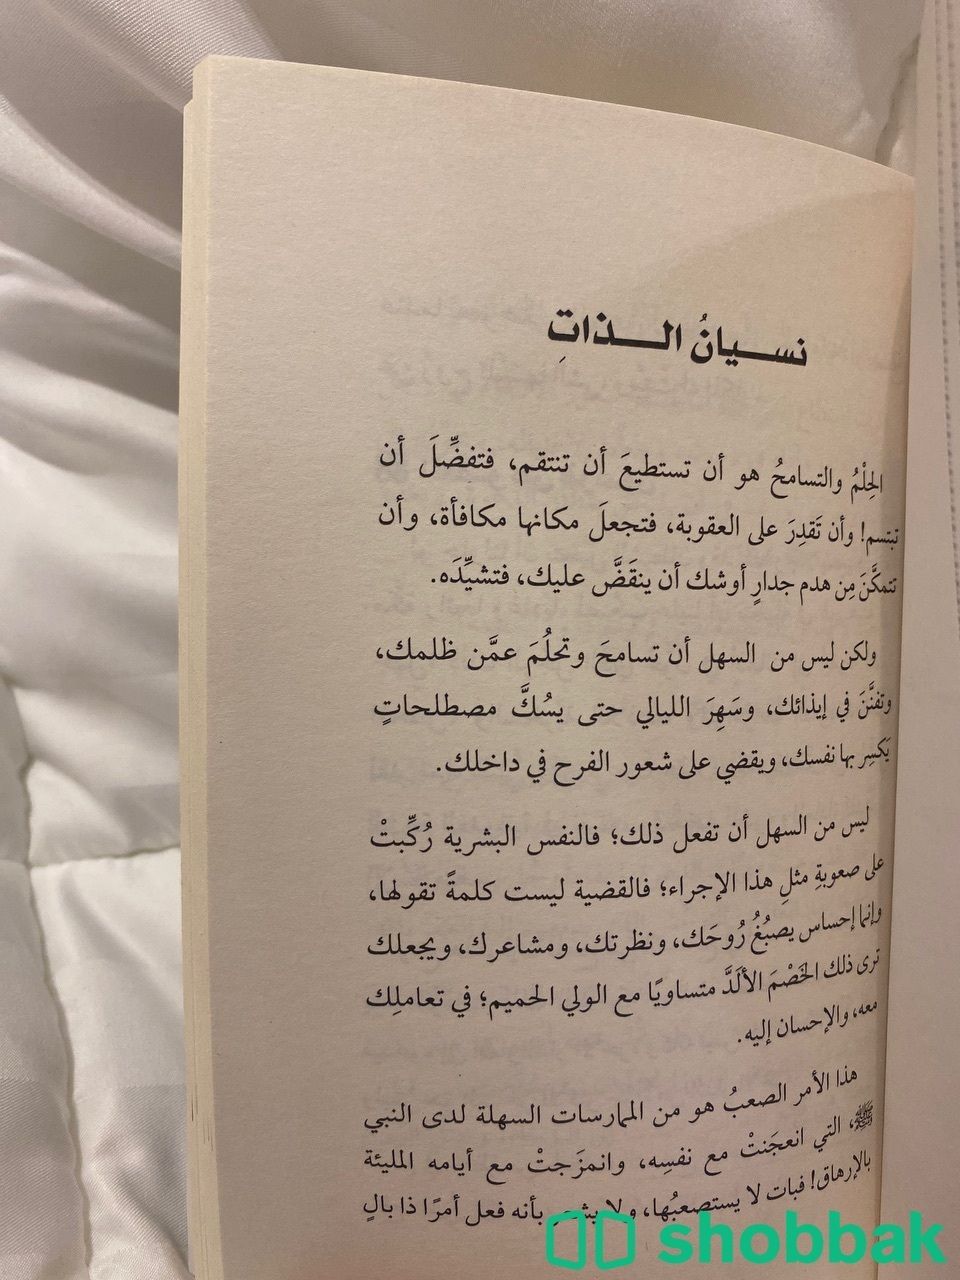 كتاب الرجل النبيل  Shobbak Saudi Arabia